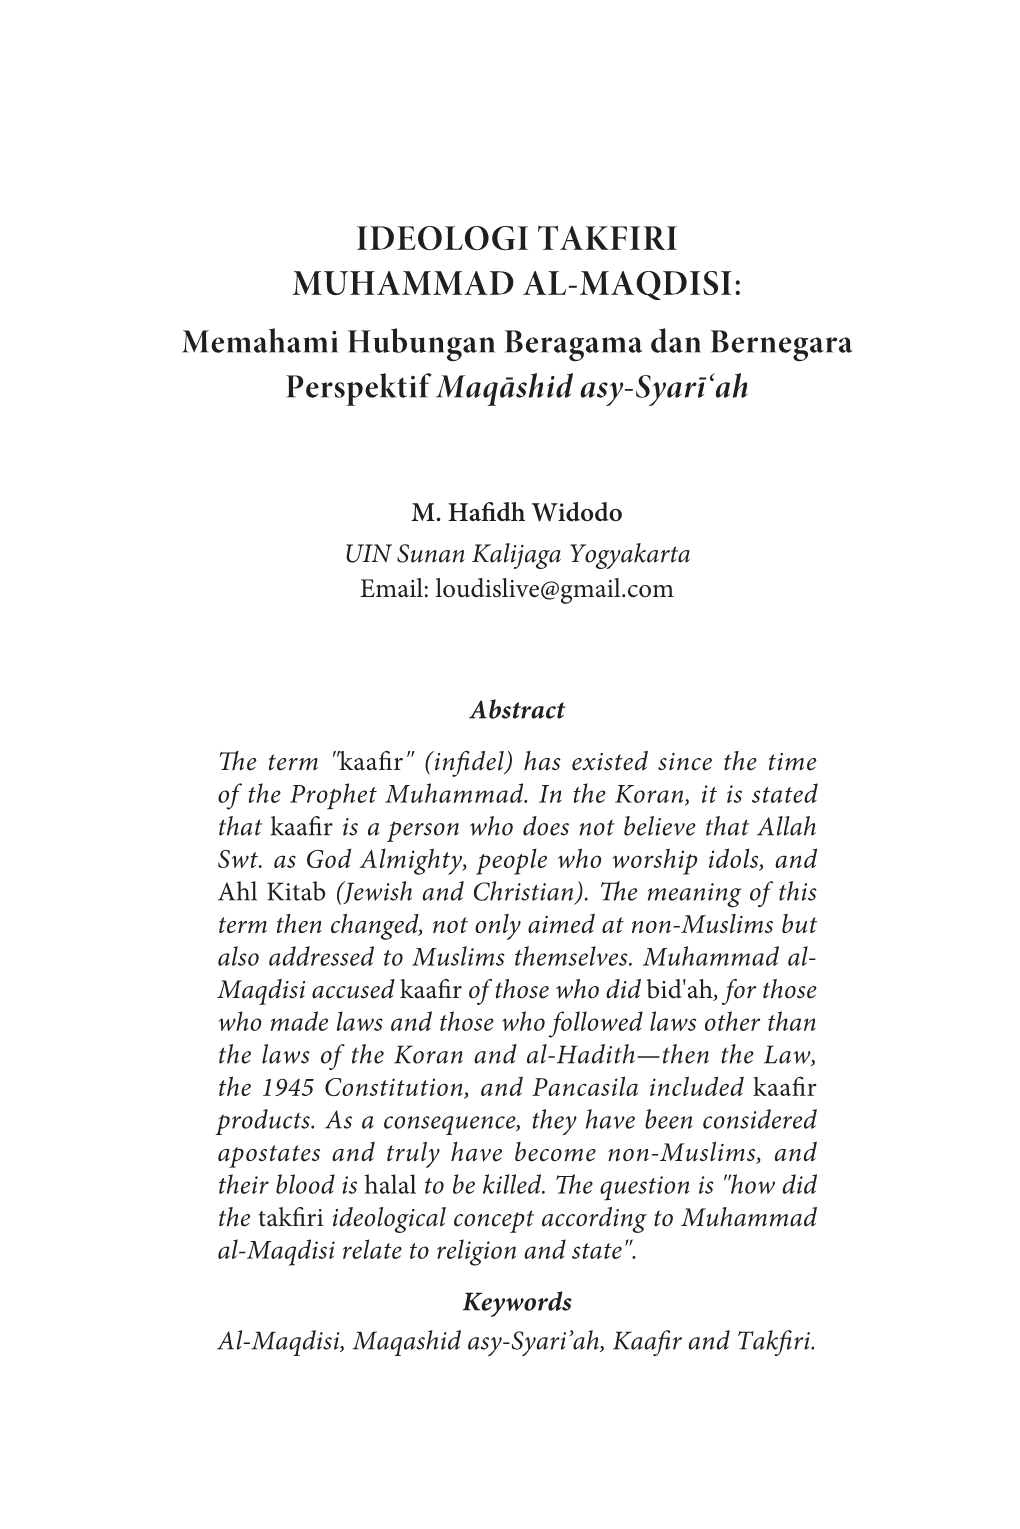 IDEOLOGI TAKFIRI MUHAMMAD AL-MAQDISI: Memahami Hubungan Beragama Dan Bernegara Perspektif Maqāshid Asy-Syarī‘Ah